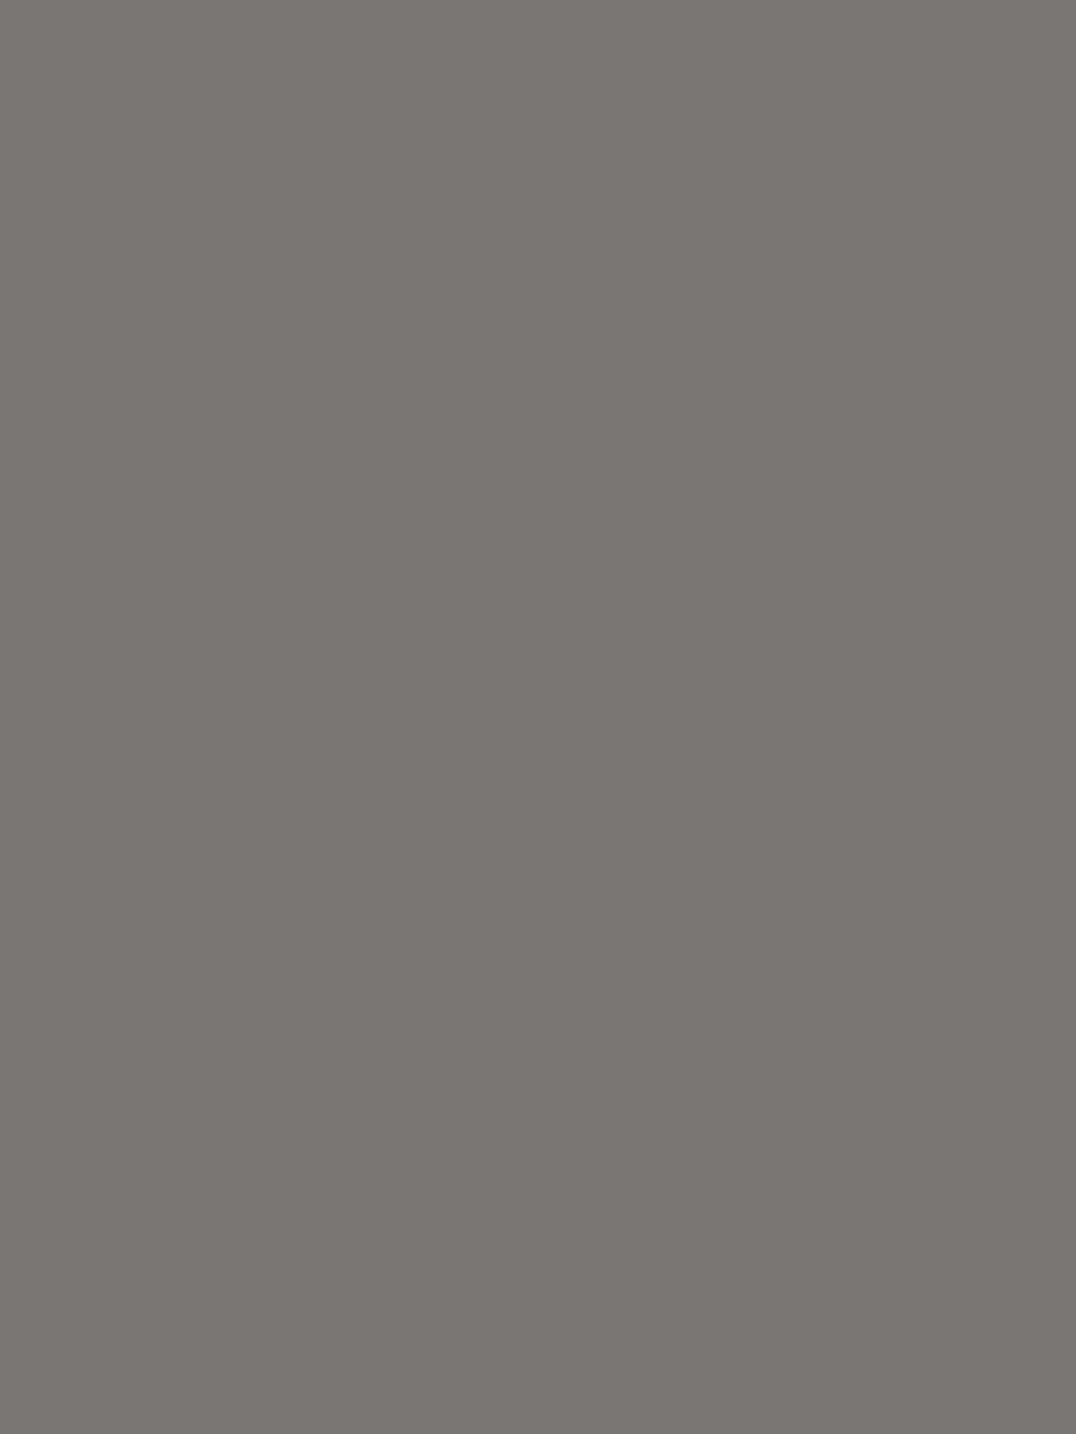 Владимир Серов. Иллюстрация к роману Л.Н. Толстого «Война и мир». 1951–1953 гг., Мемориально-художественный музей Владимира Серова, поселок Эммаусс, Тверская область